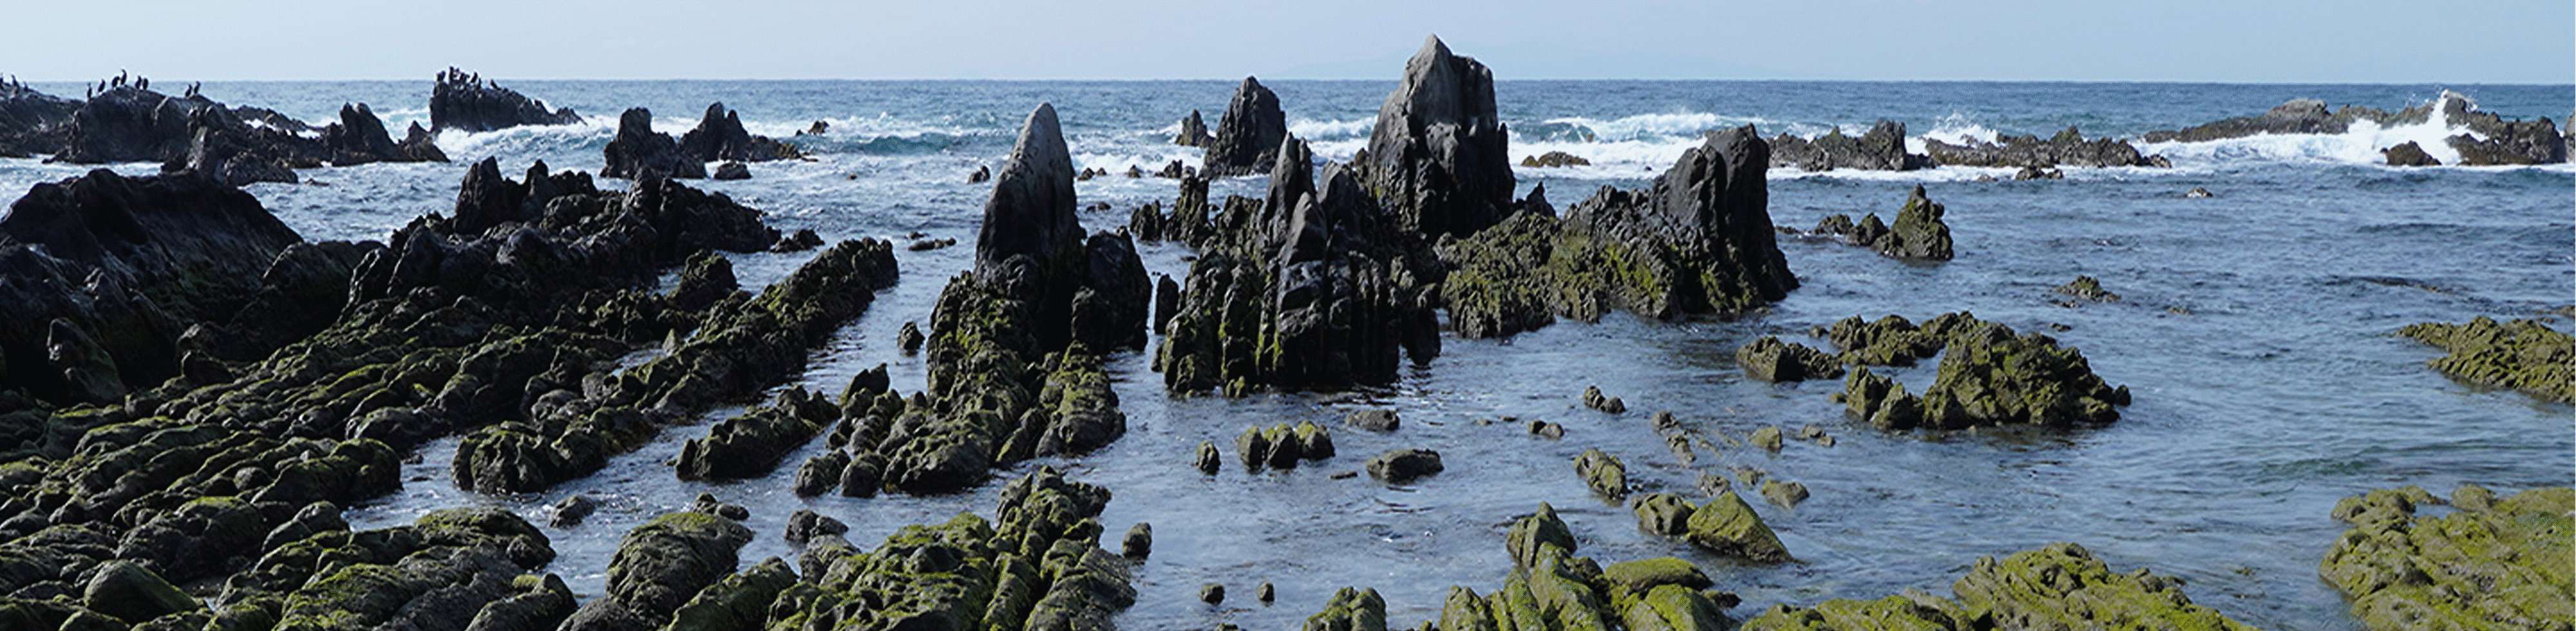 Immagine di una formazione rocciosa lungo la costa